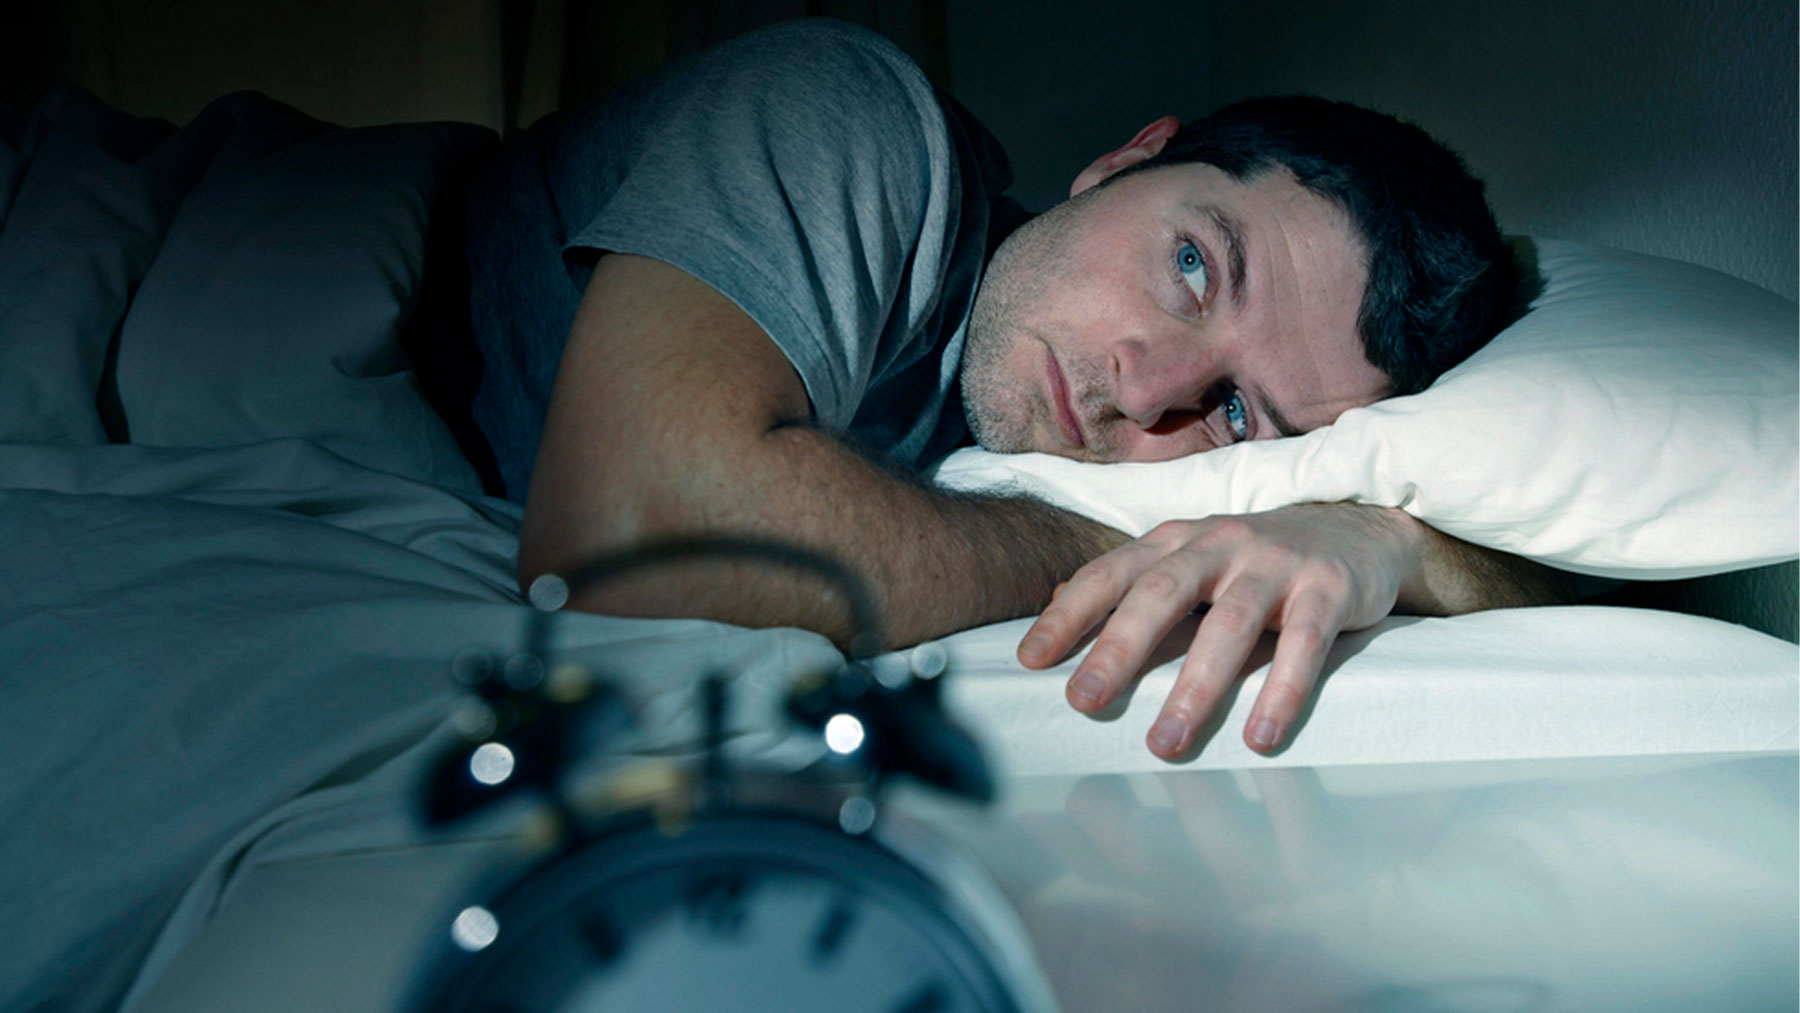 Las personas necesitan dormir con los ojos cerrados para evitar que entre luz y regular los ciclos de sueño.